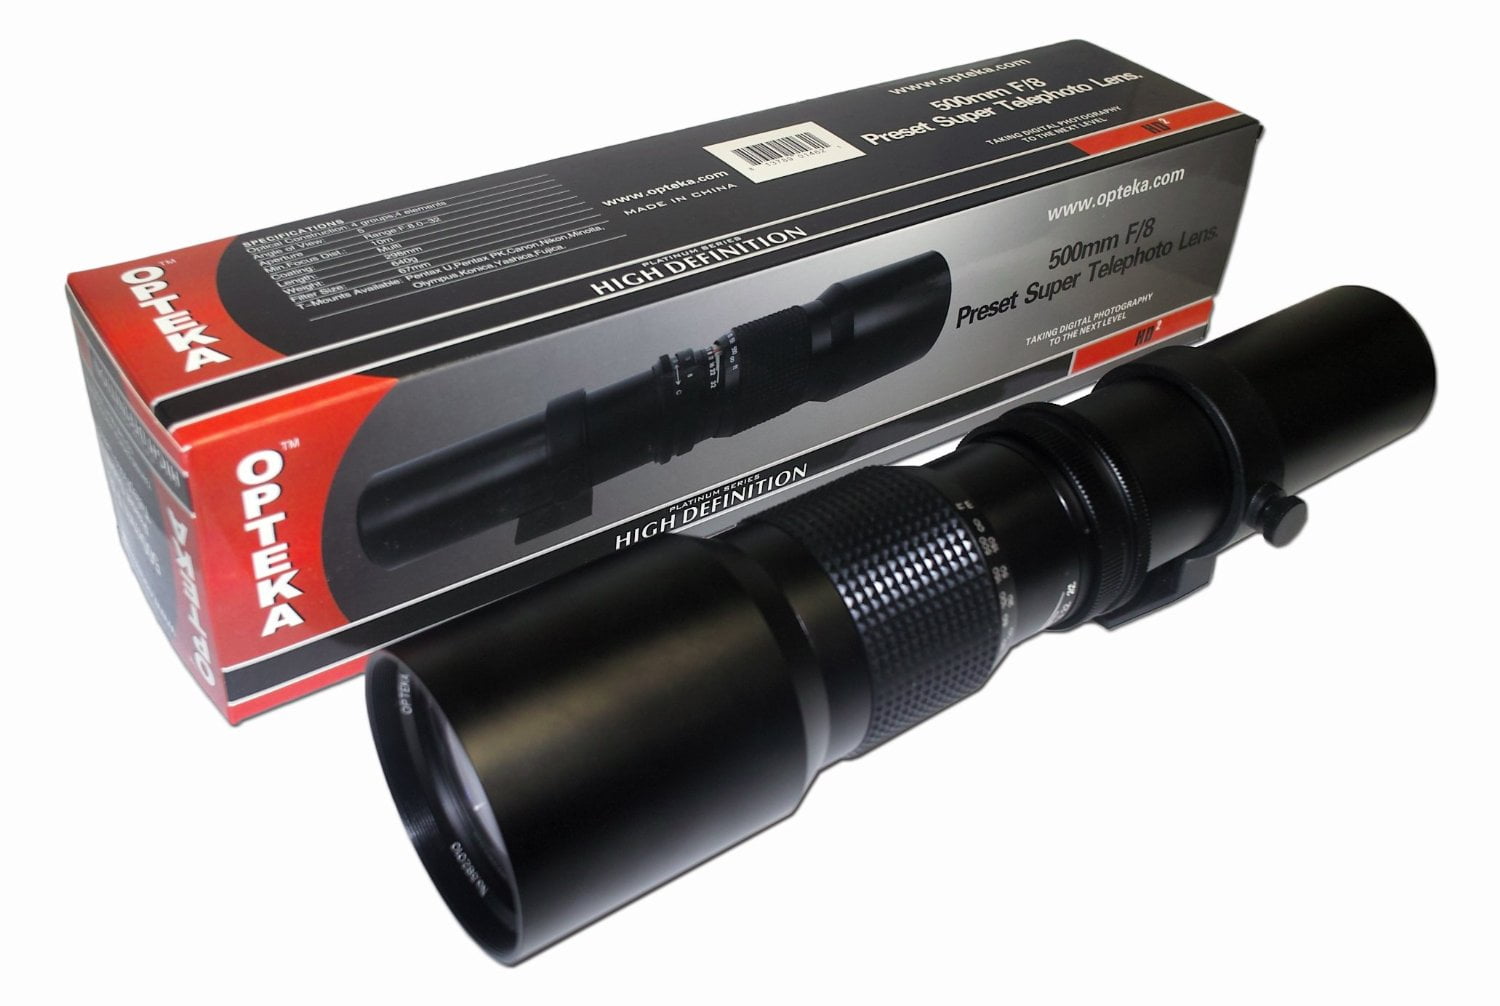 E-400 E-420 Opteka 500-1000mm High Definition Mirror Telephoto Lens for Olympus EVOLT E-520 E-310 E-510 Four Thirds Mount E-30 & E-3 Digital SLR Cameras E-500 E-410 E-330